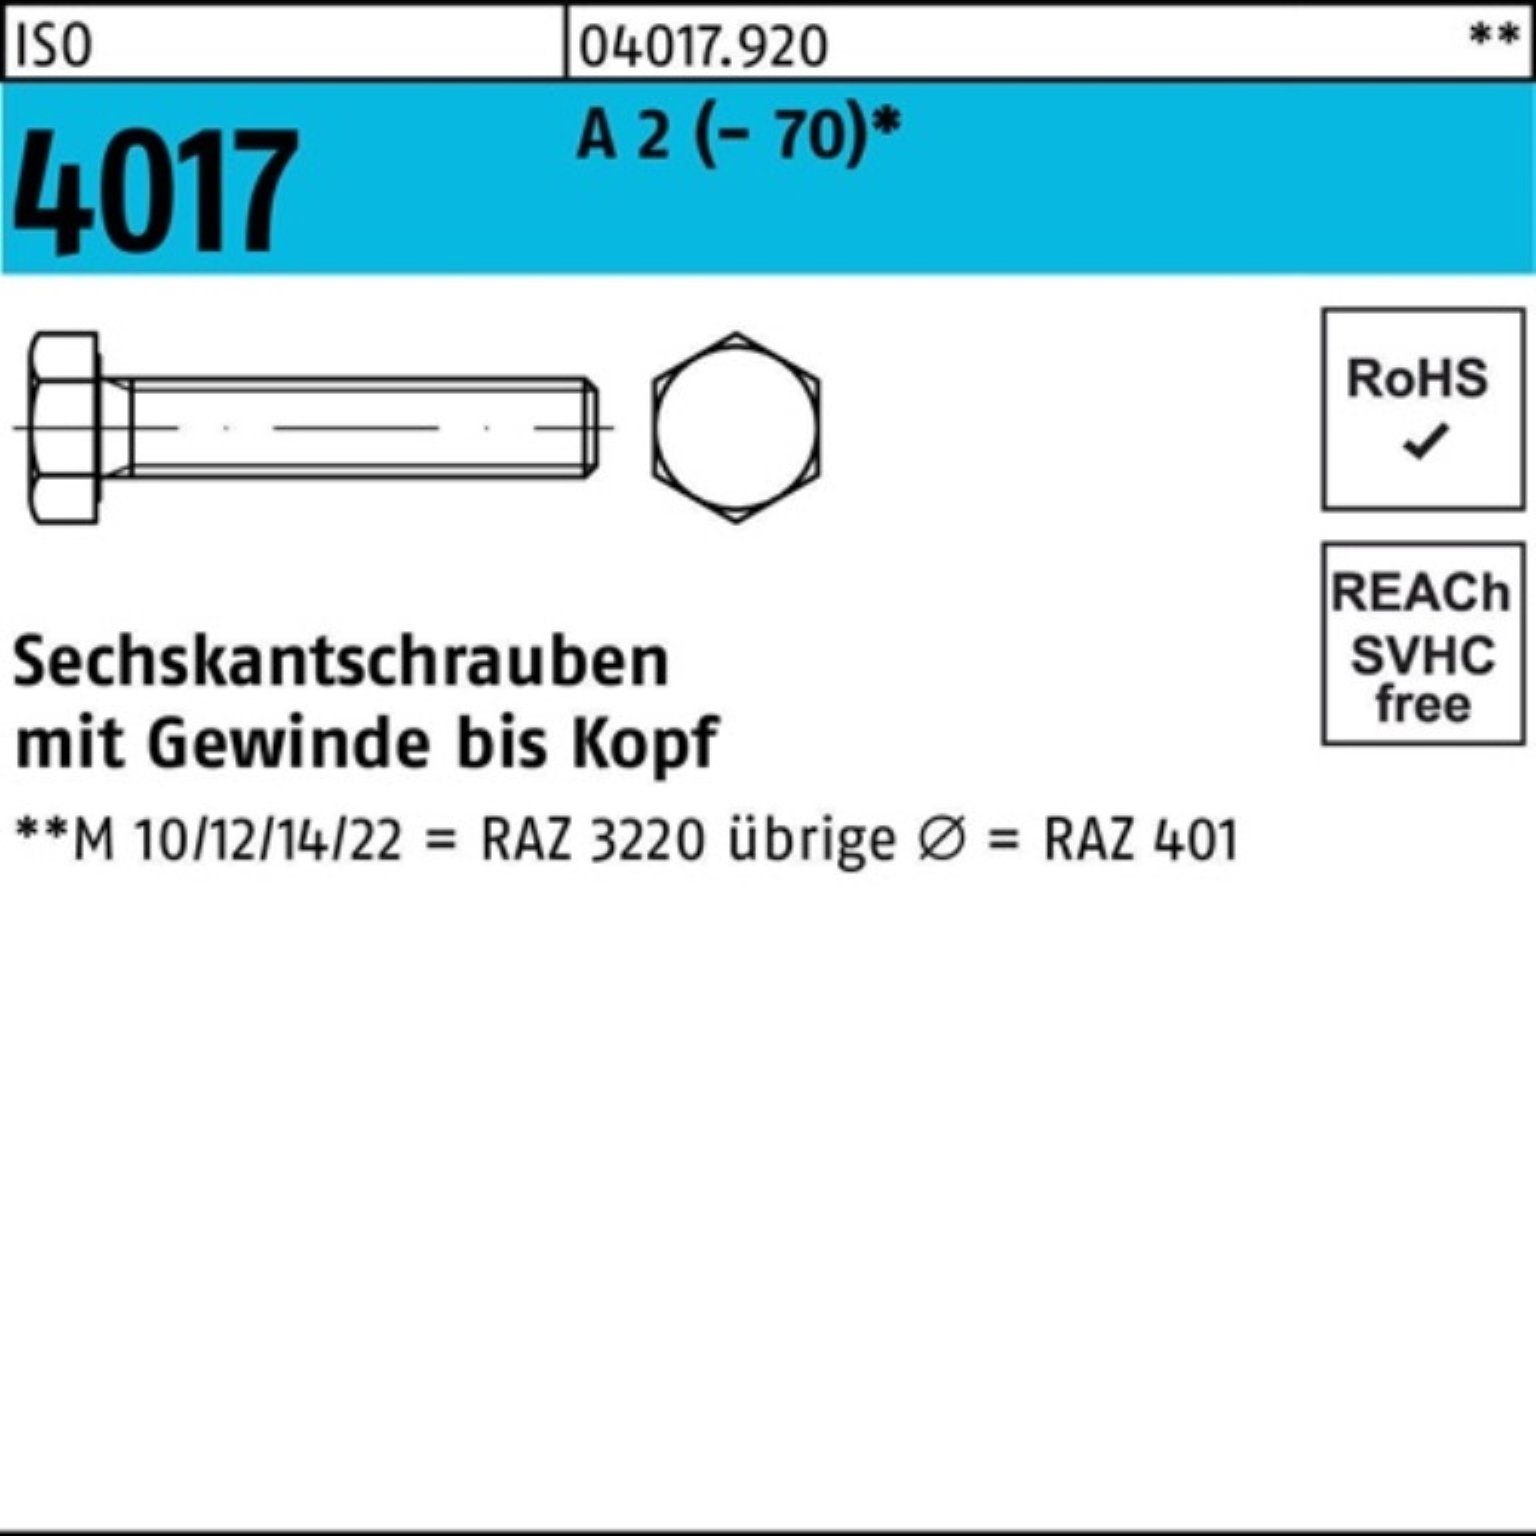 Bufab Sechskantschraube 100er 1 VG 90 ISO A (70) 4017 Pack 2 Sechskantschraube M22x Stück I